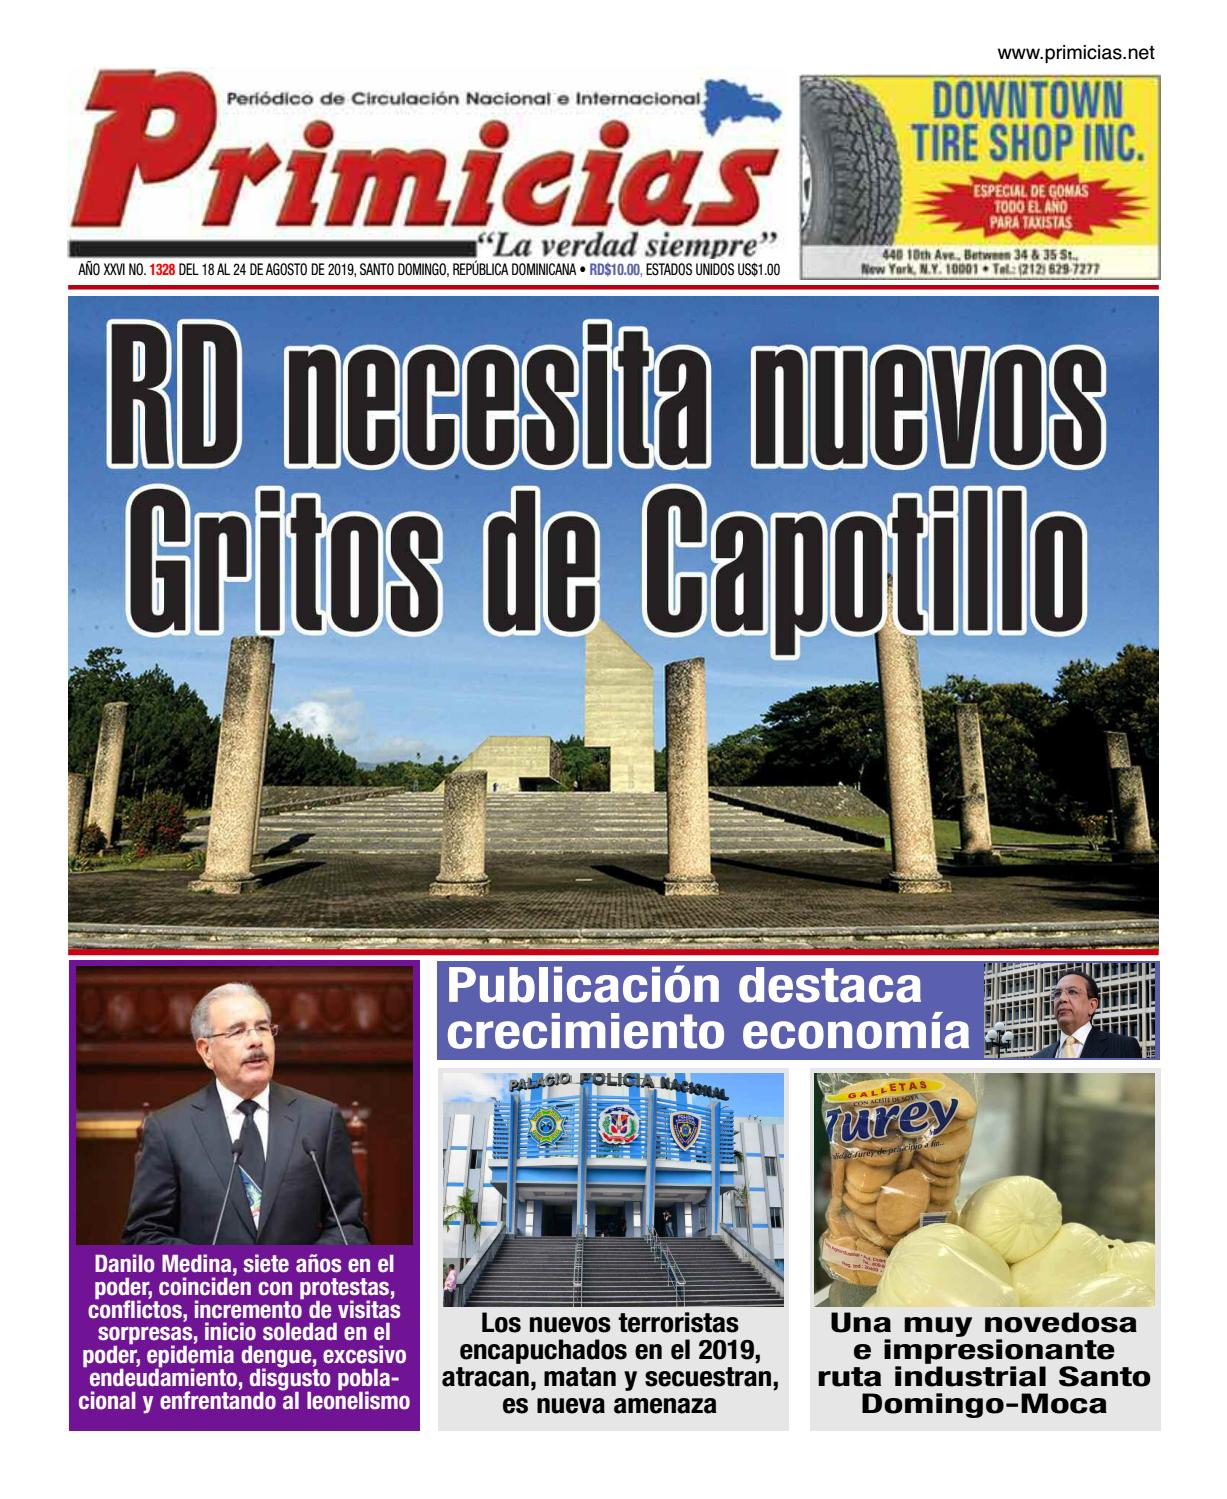 Portada Periódico Primicias, Lunes 19 de Agosto, 2019